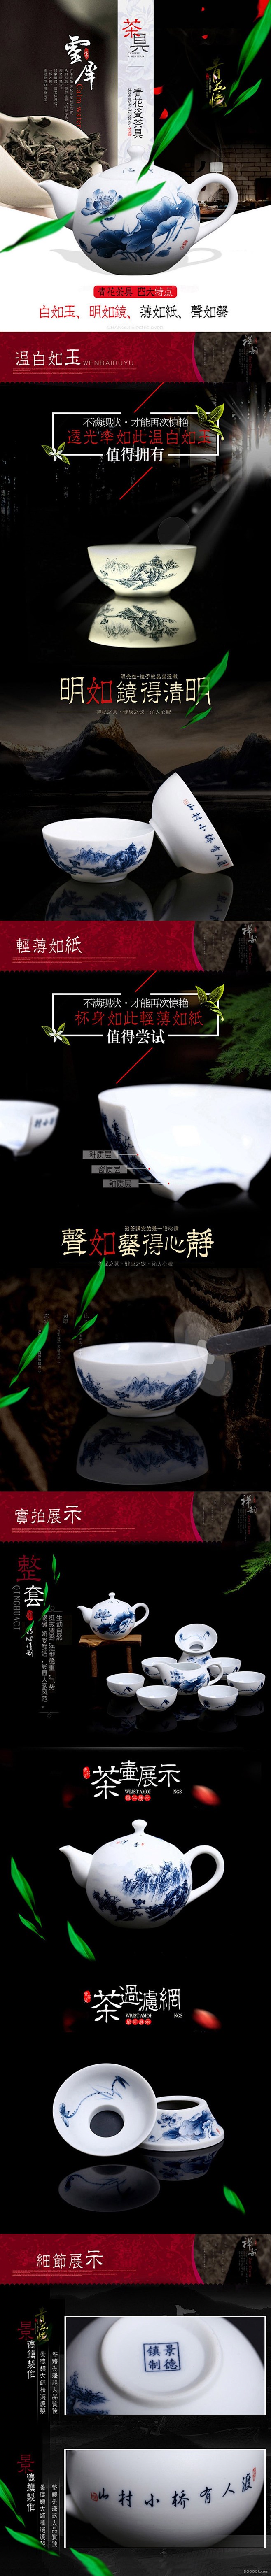 青花瓷茶具详情页设计.jpg